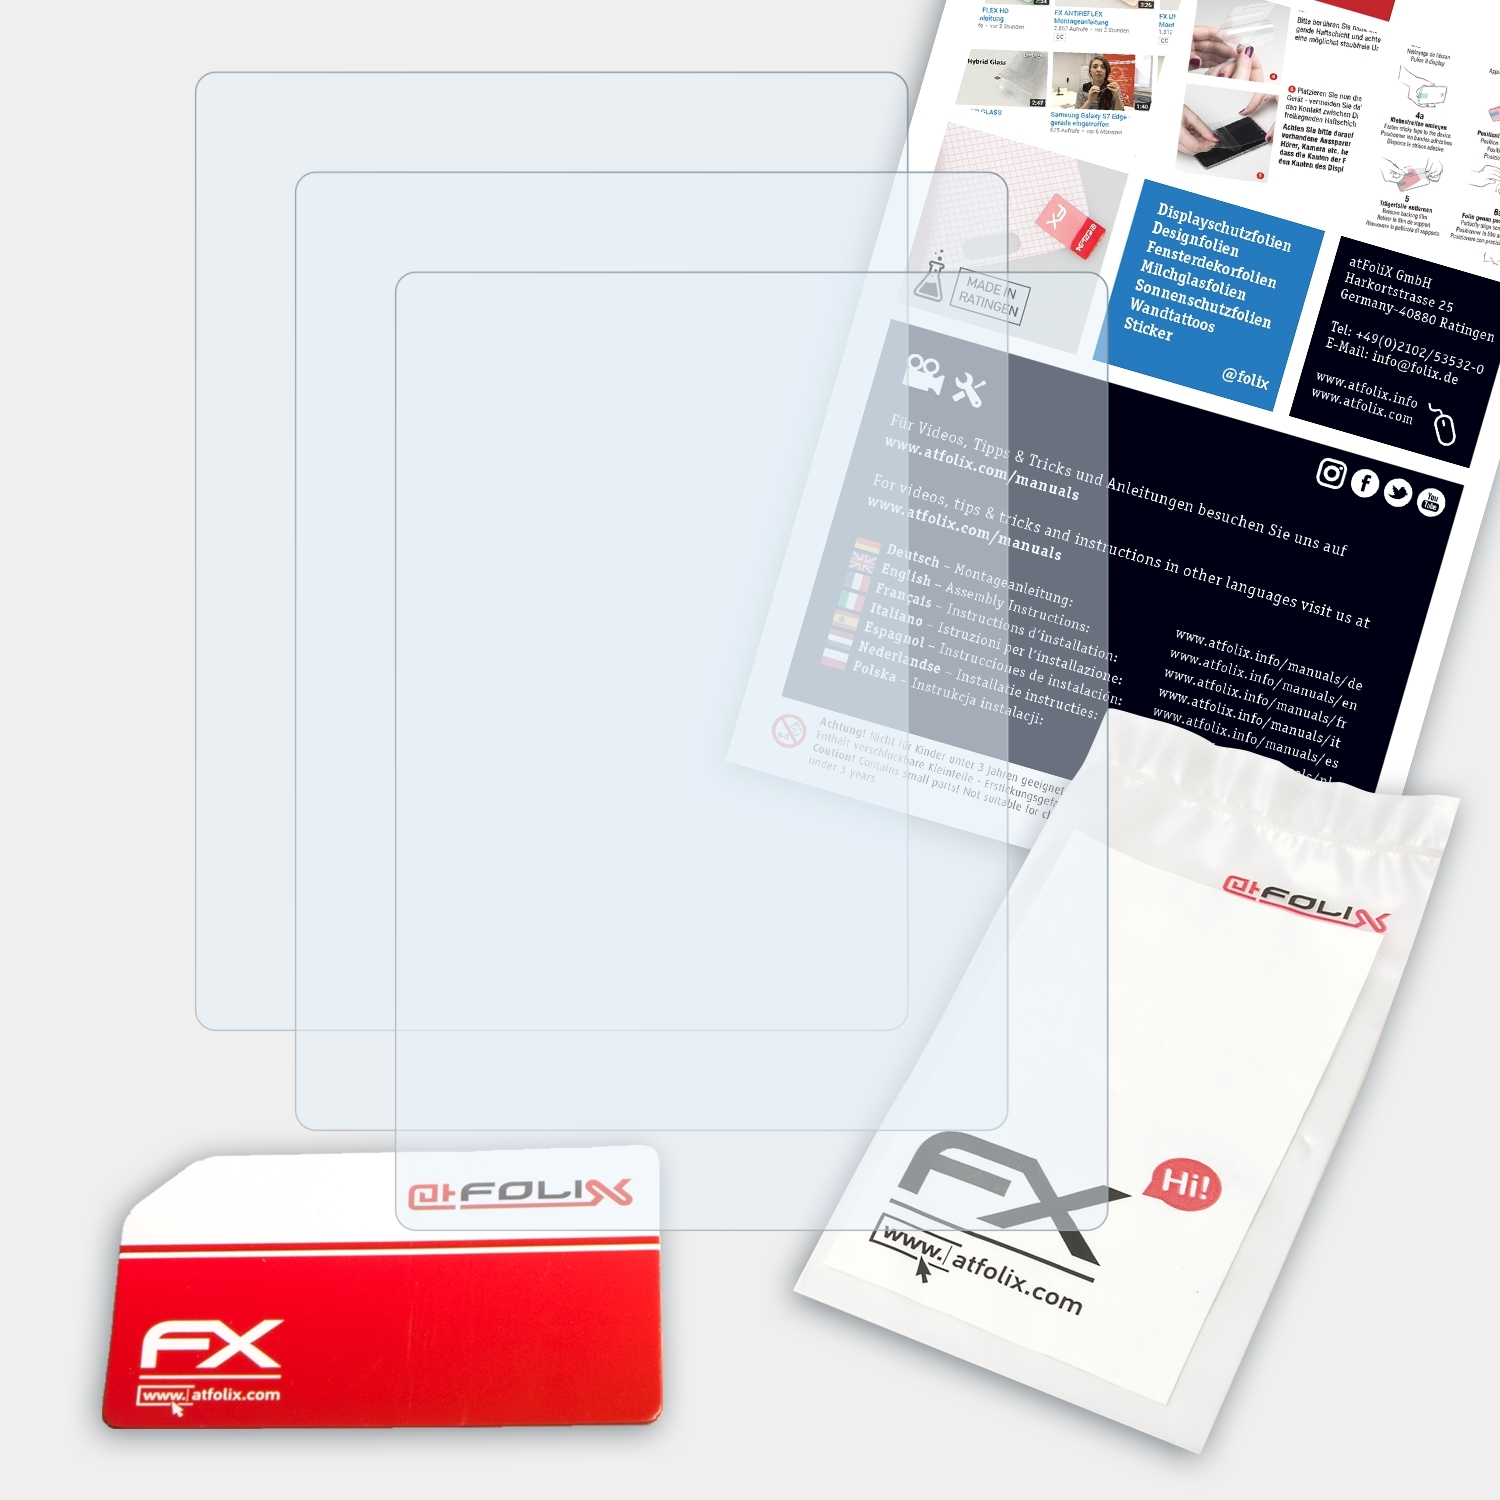 ATFOLIX 3x Powerflex Displayschutz(für FX-Clear 350) Rollei